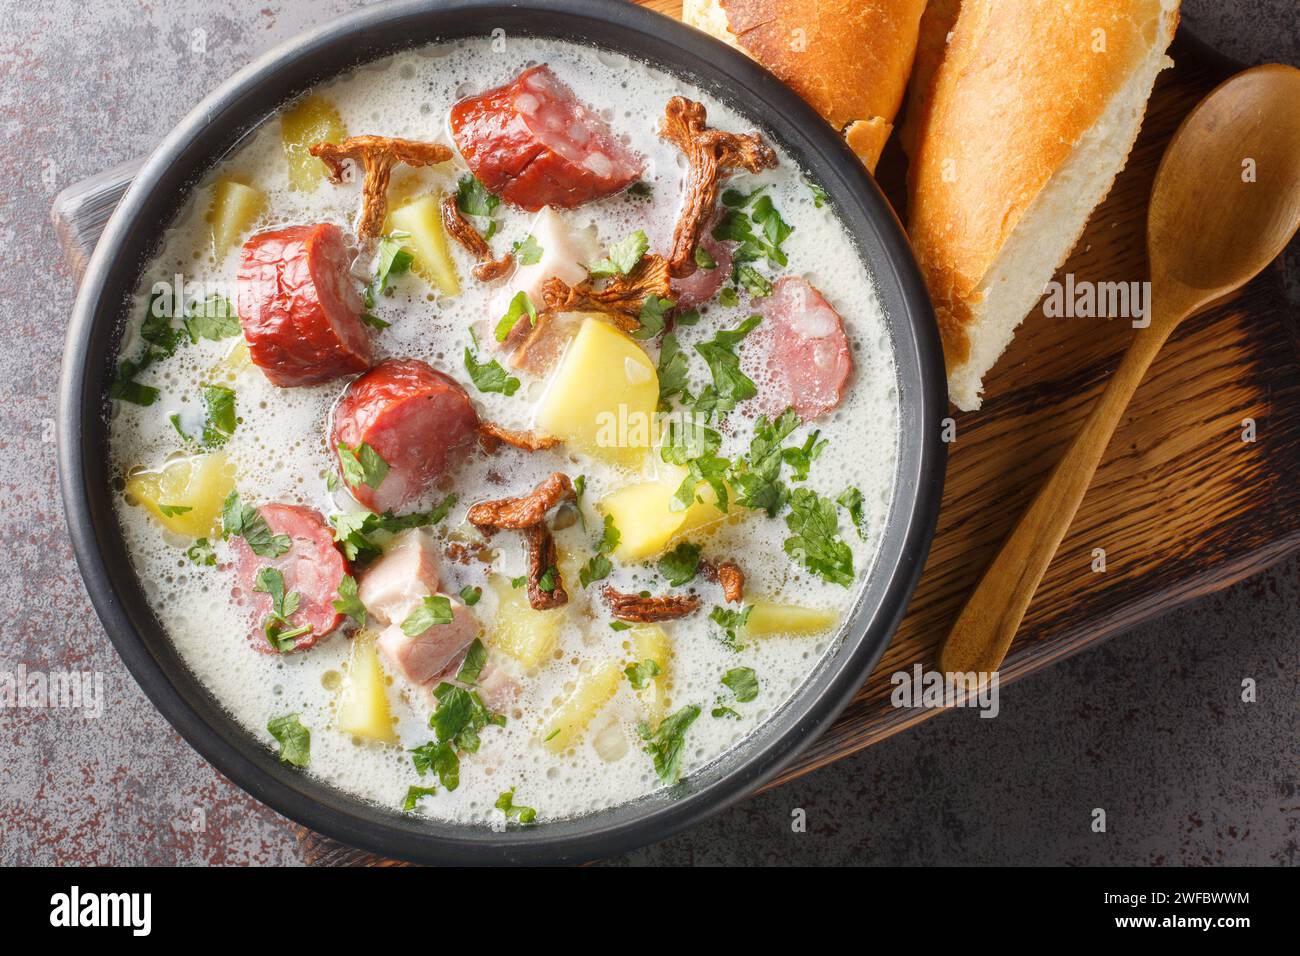 Zalewajka è una tradizionale zuppa rustica composta da patate a cubetti e bollite e ricoperta di pasta madre di segale acida con salsiccia e funghi secchi vicino Foto Stock